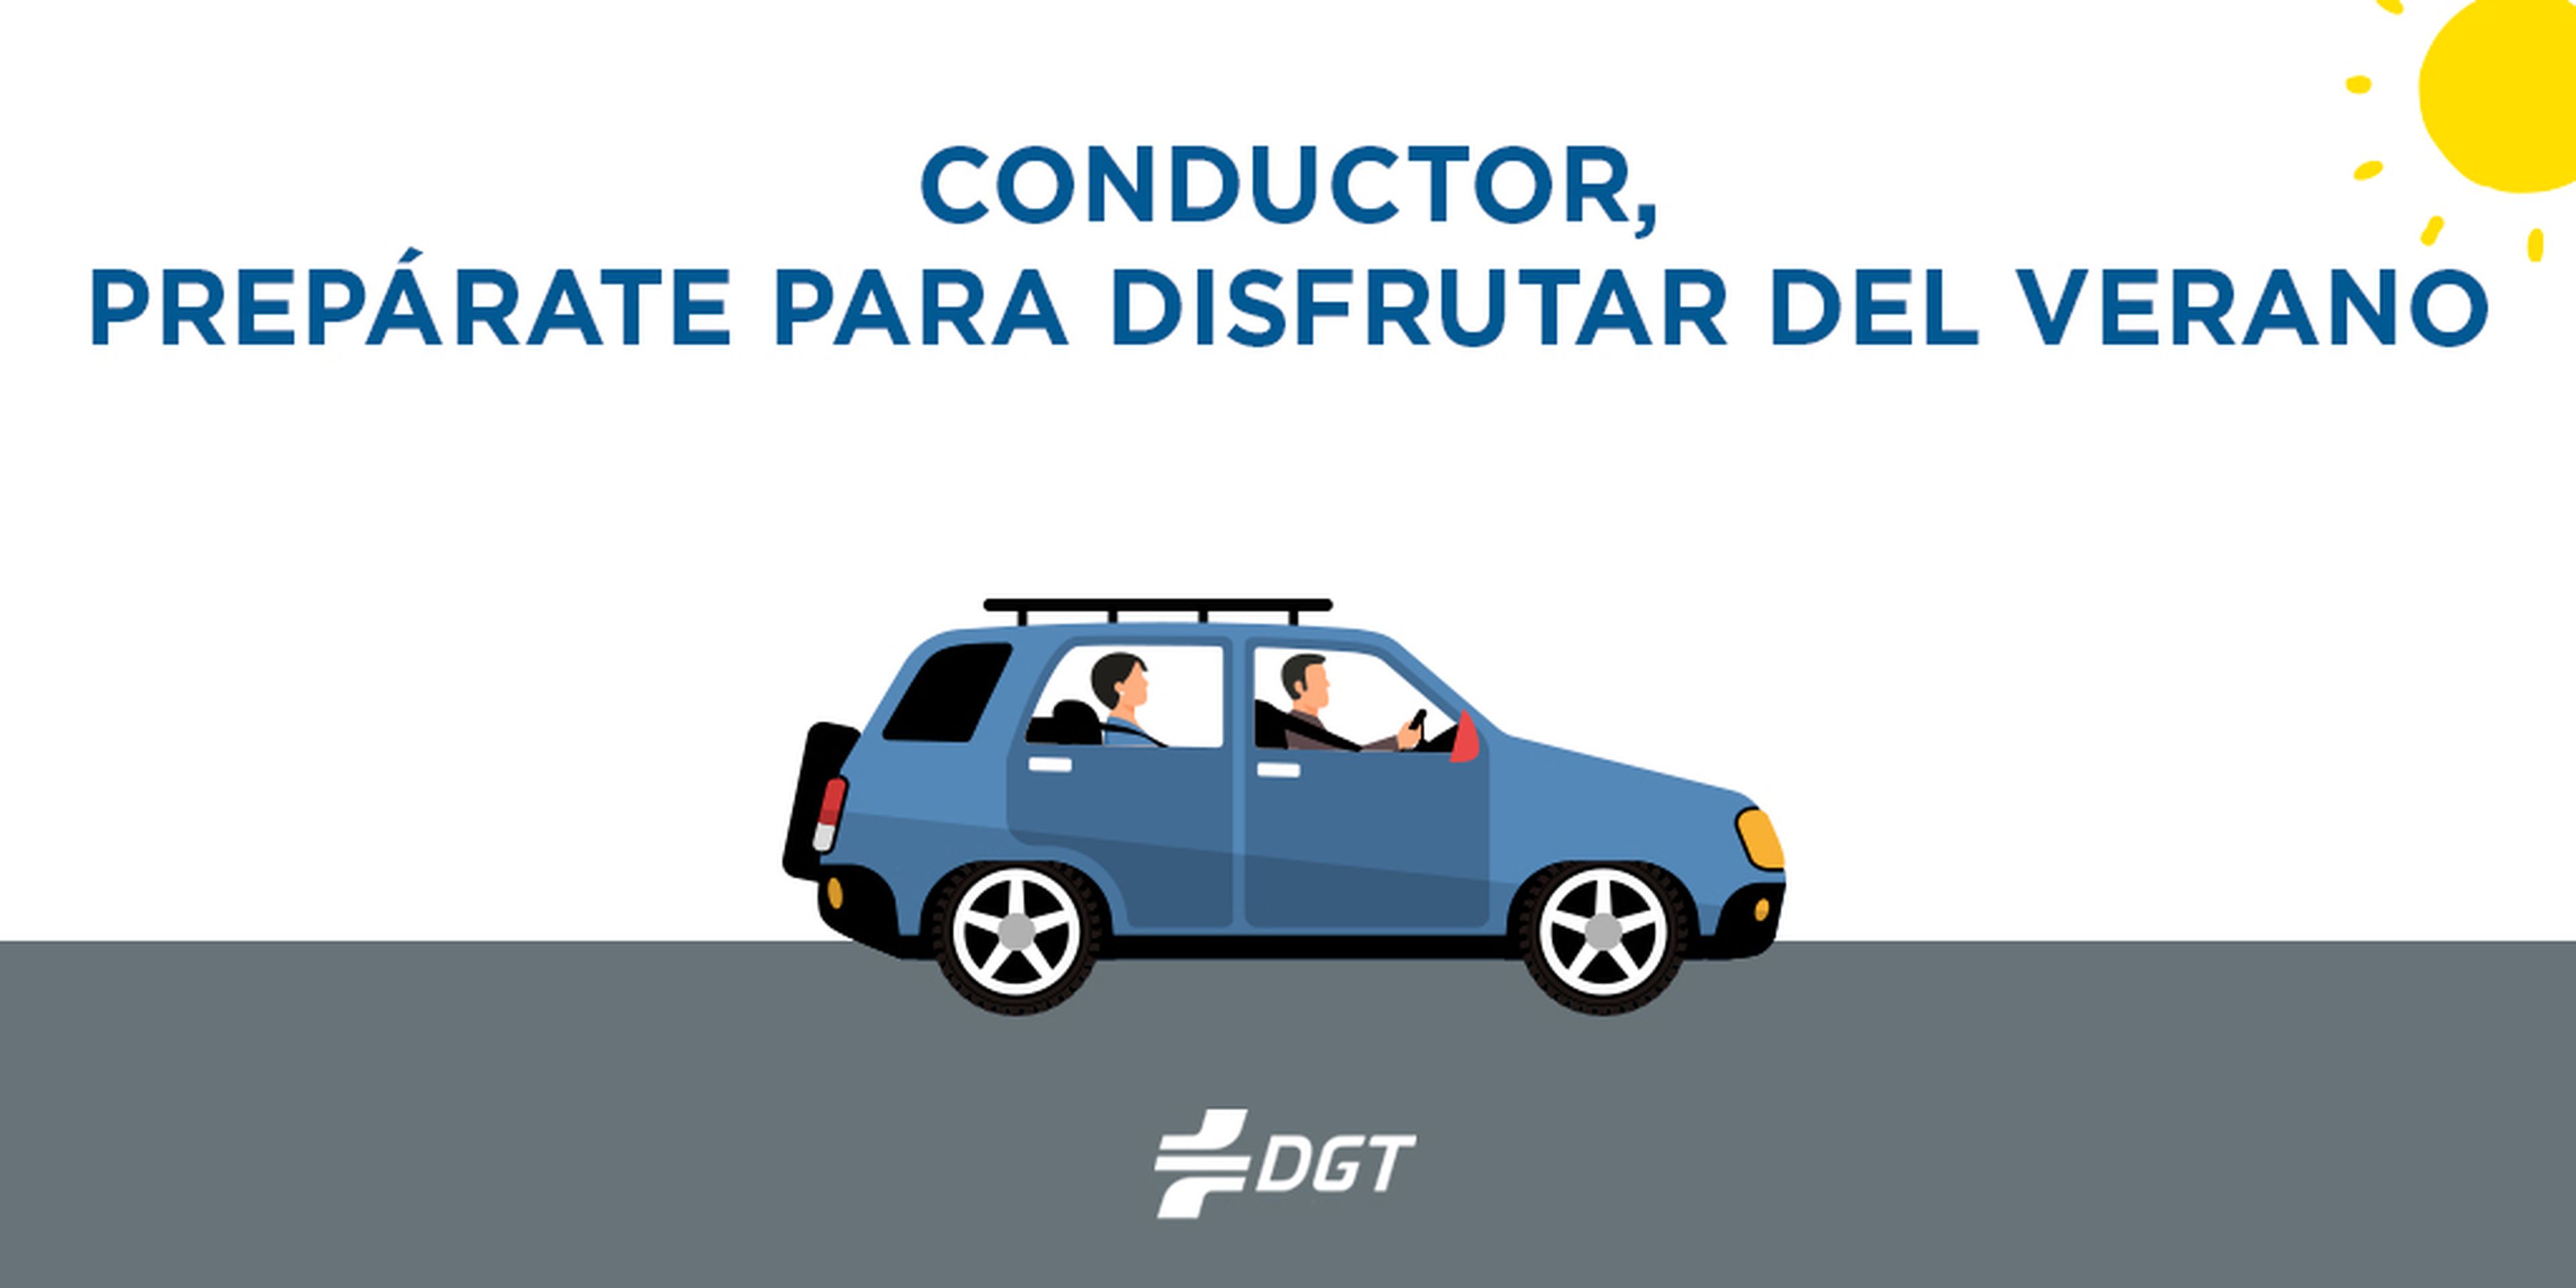 La DGT nos da consejos para conducir seguro.